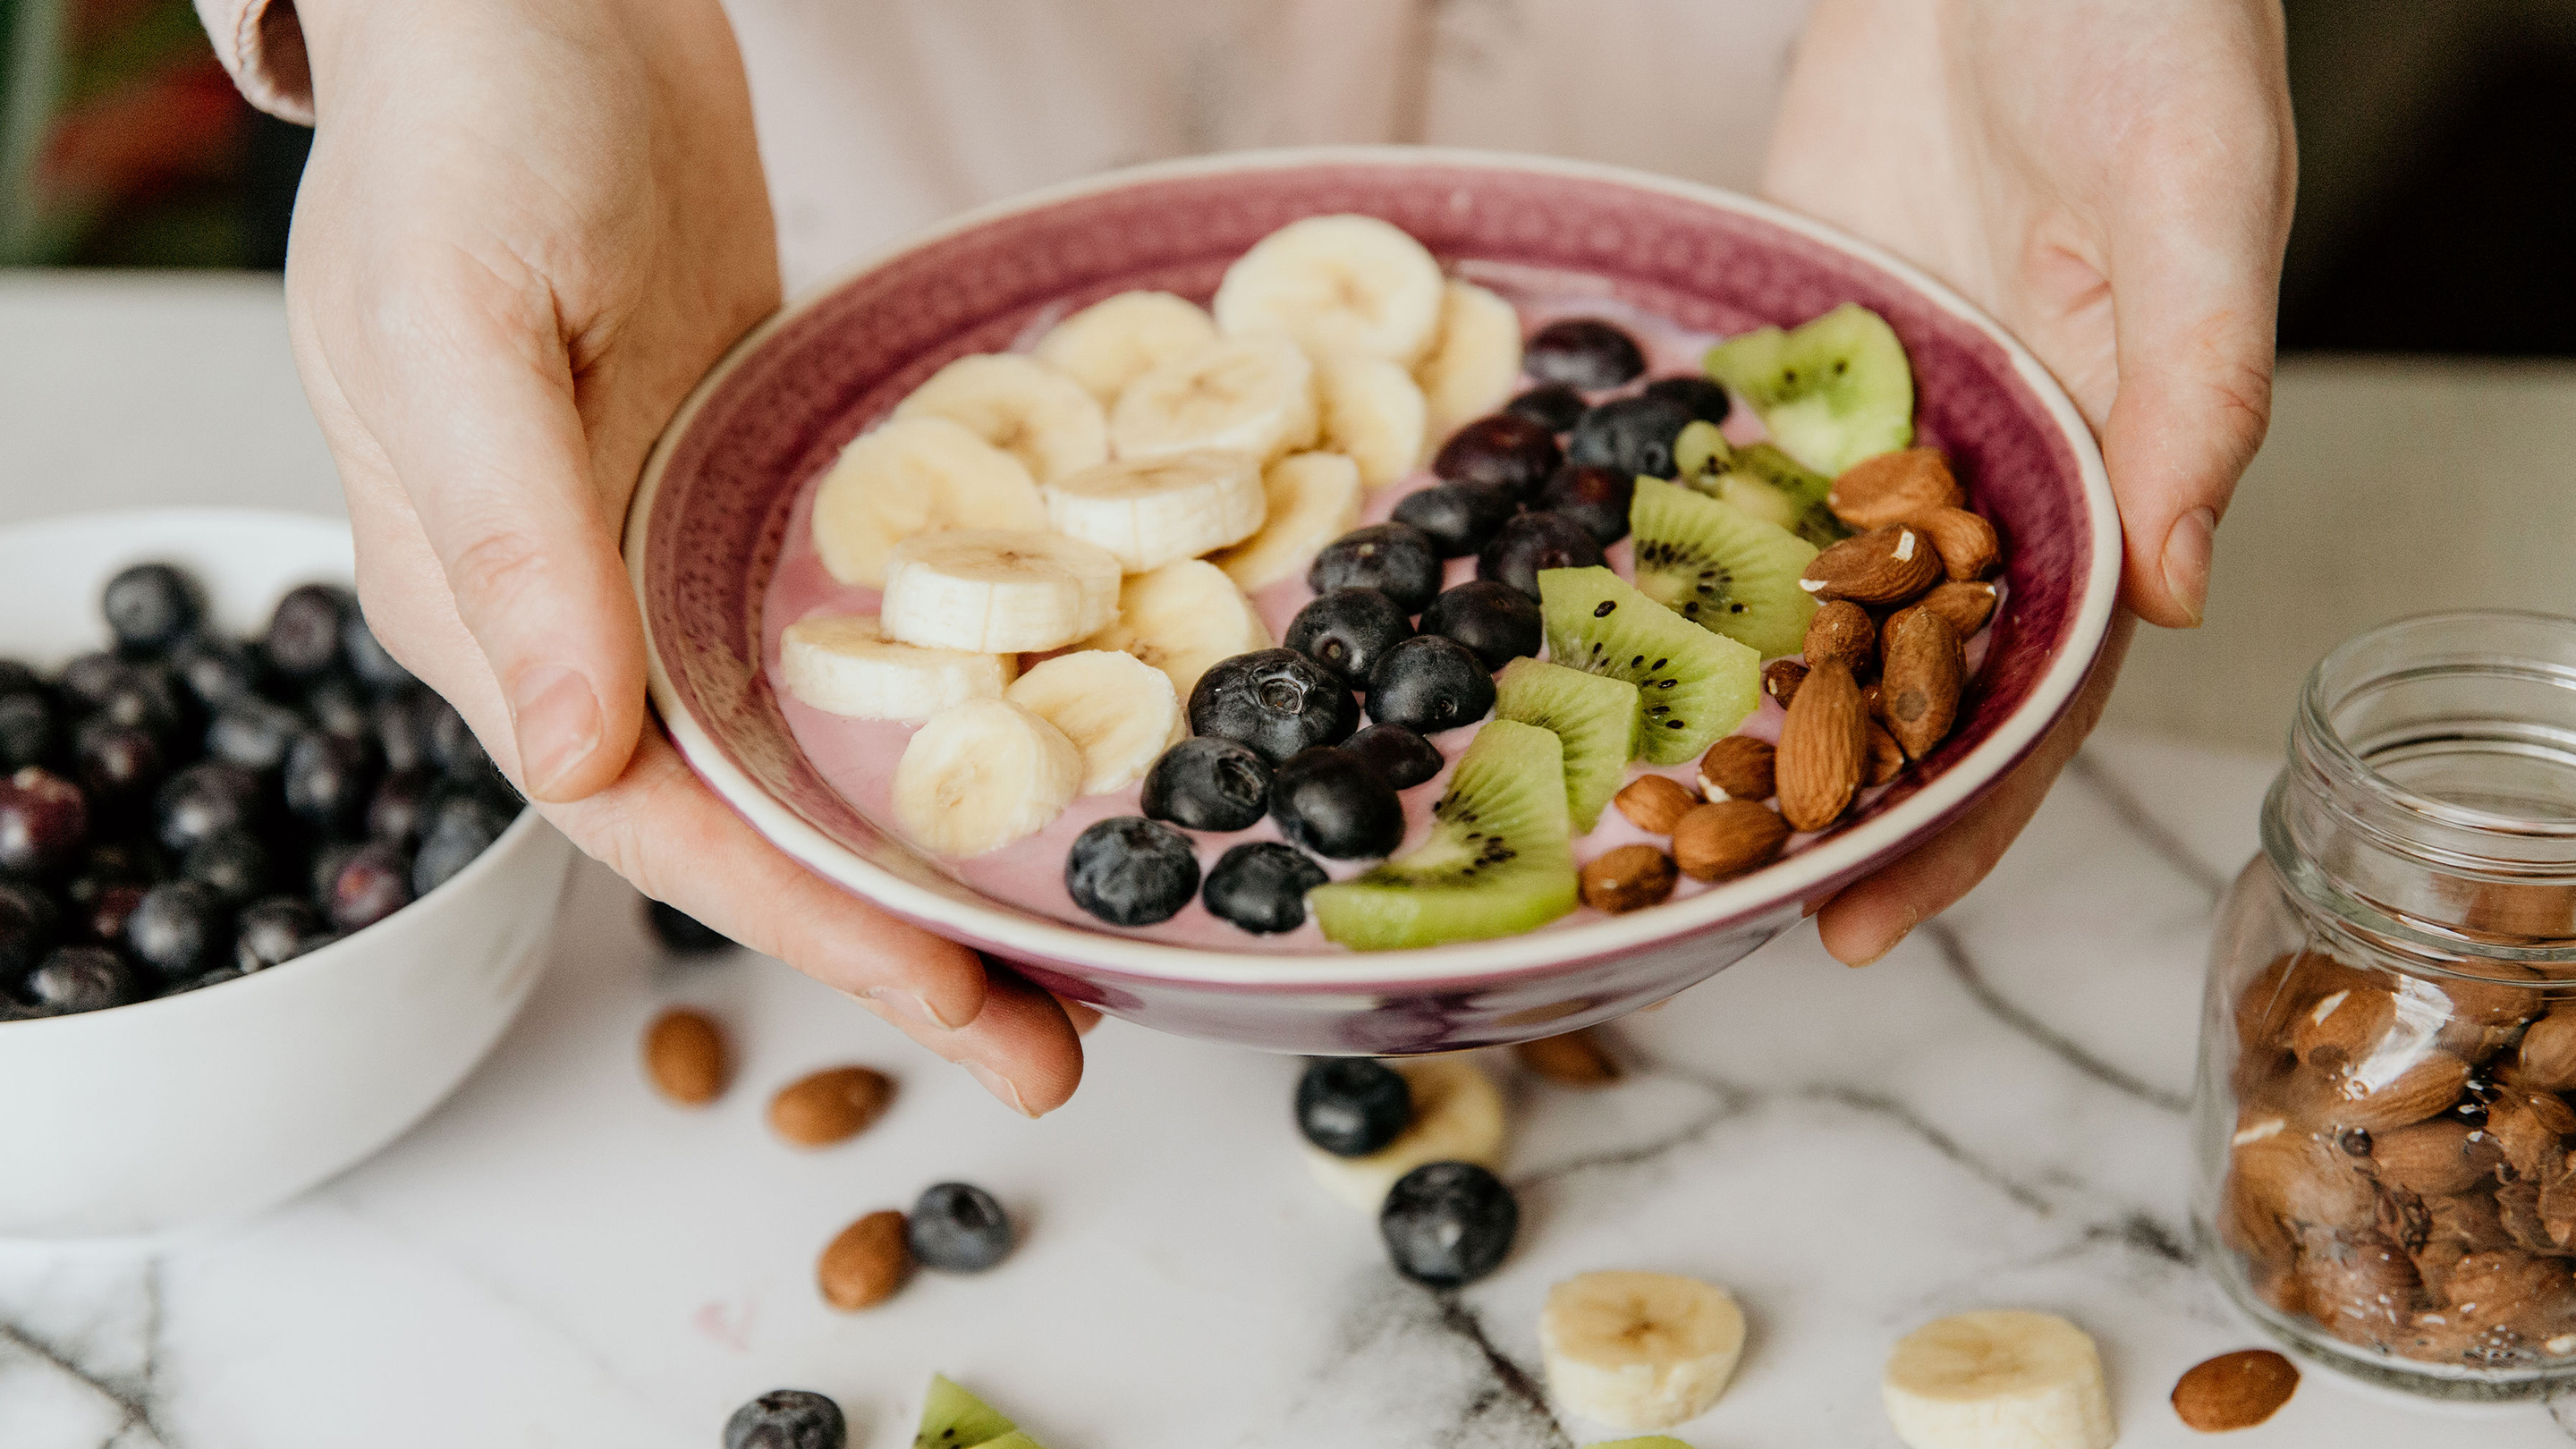 Bunte Früchte sorgen beim Frühstück für gute Laune! (Marke des Geschirrs: Butlers).